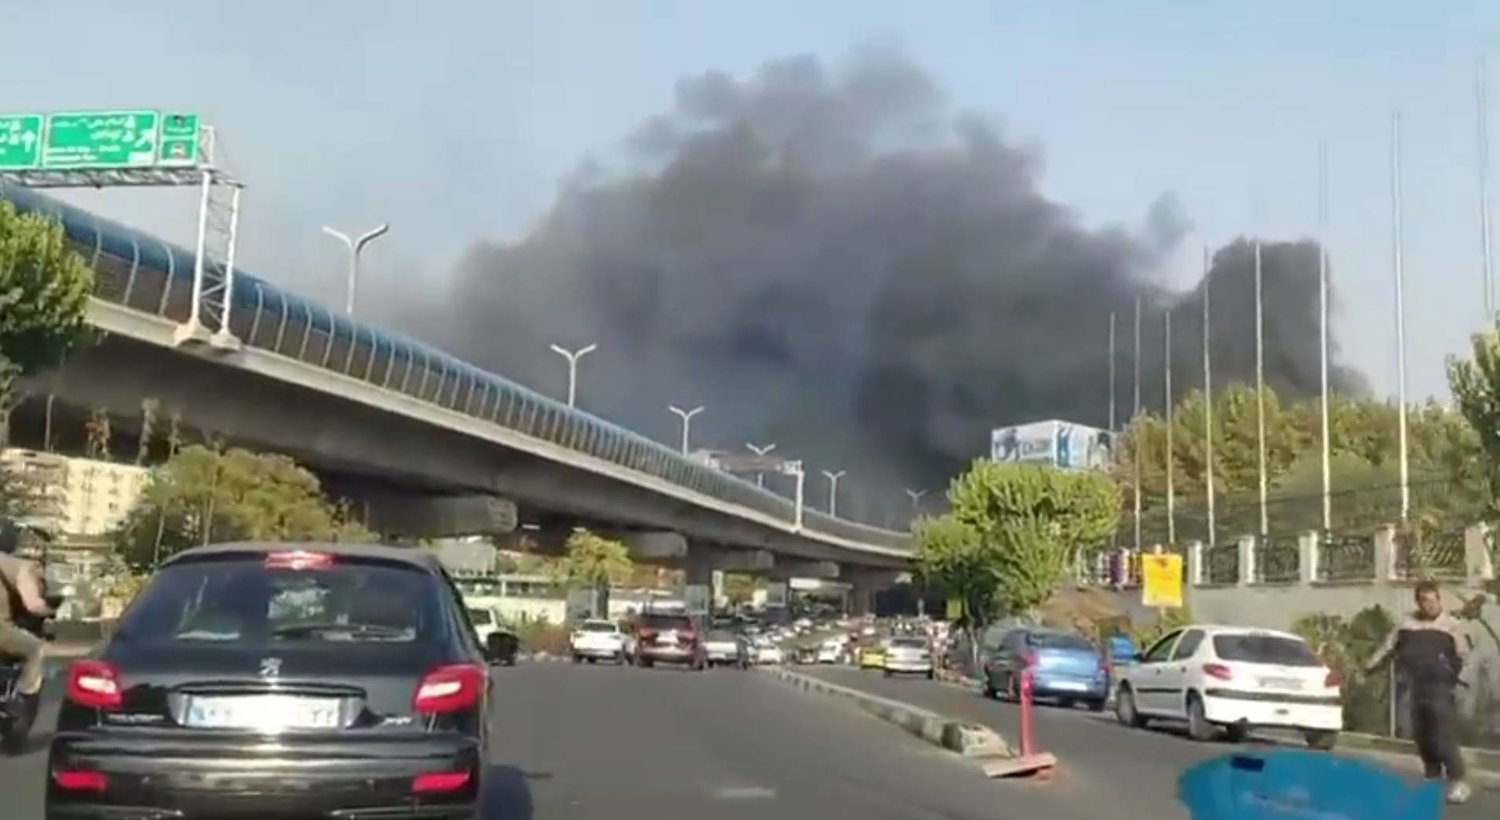 صورة من فيديو سجله مارة يظهر حريقاً في منشأة تابعة لوزارة الدفاع الإيرانية شرق طهران اليوم